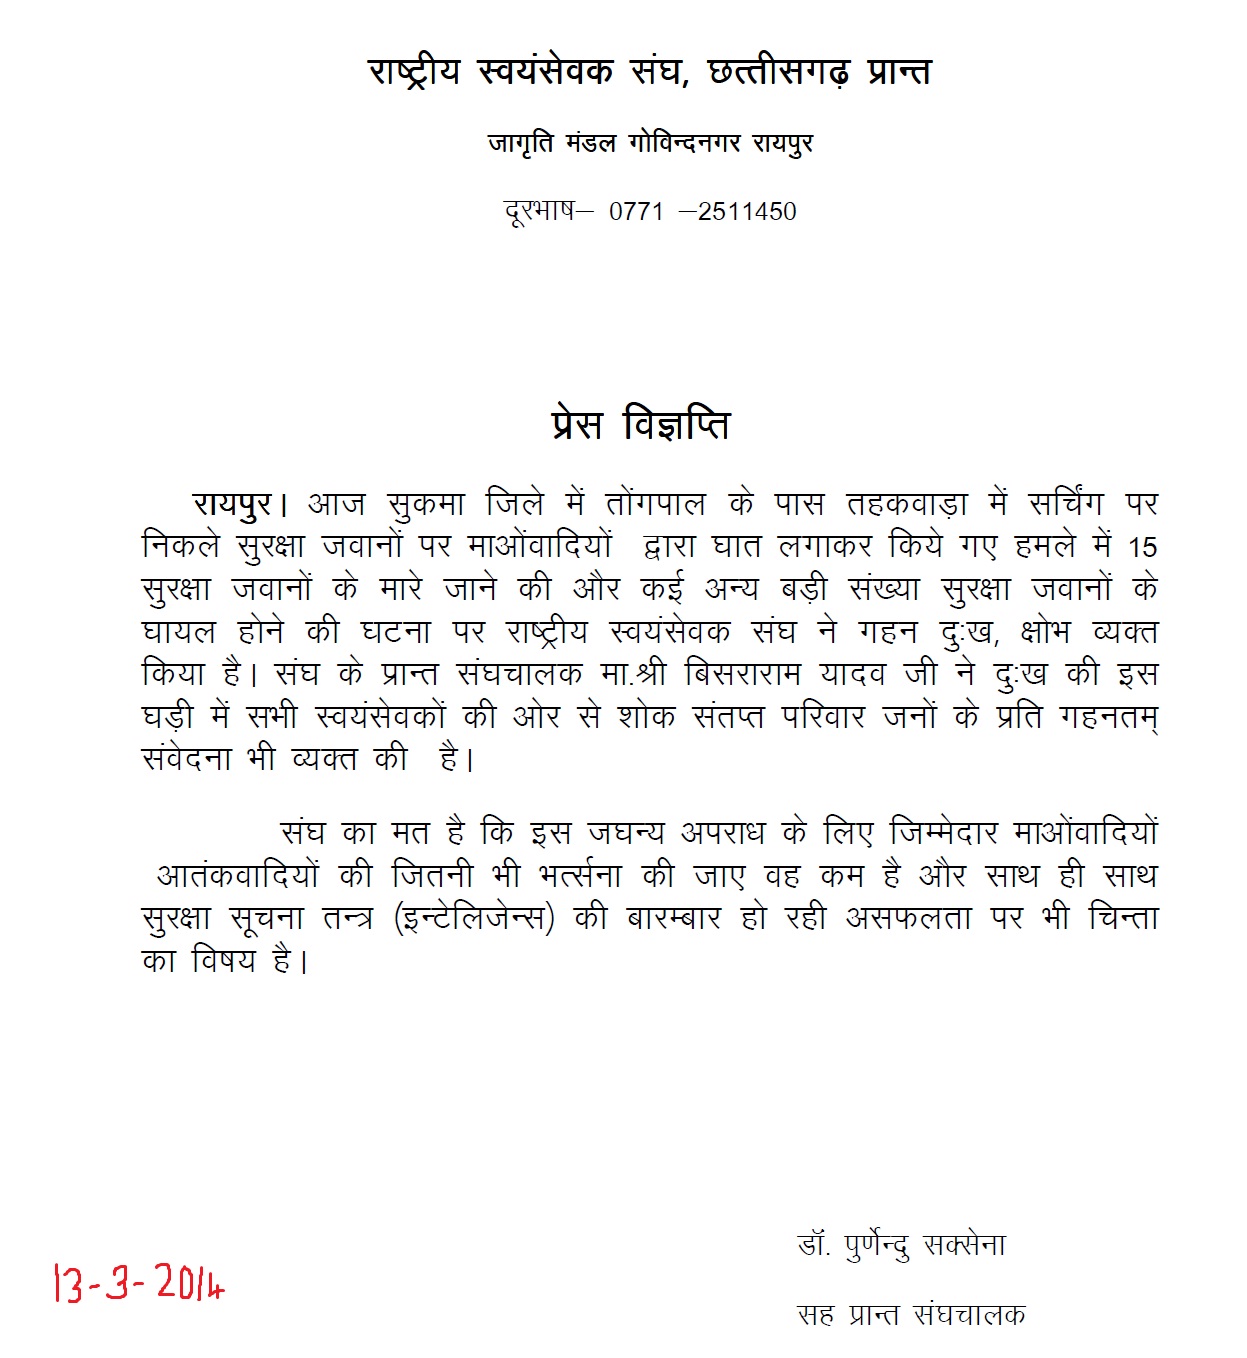 RSS Chattisgarh Press Release March 13, 2014